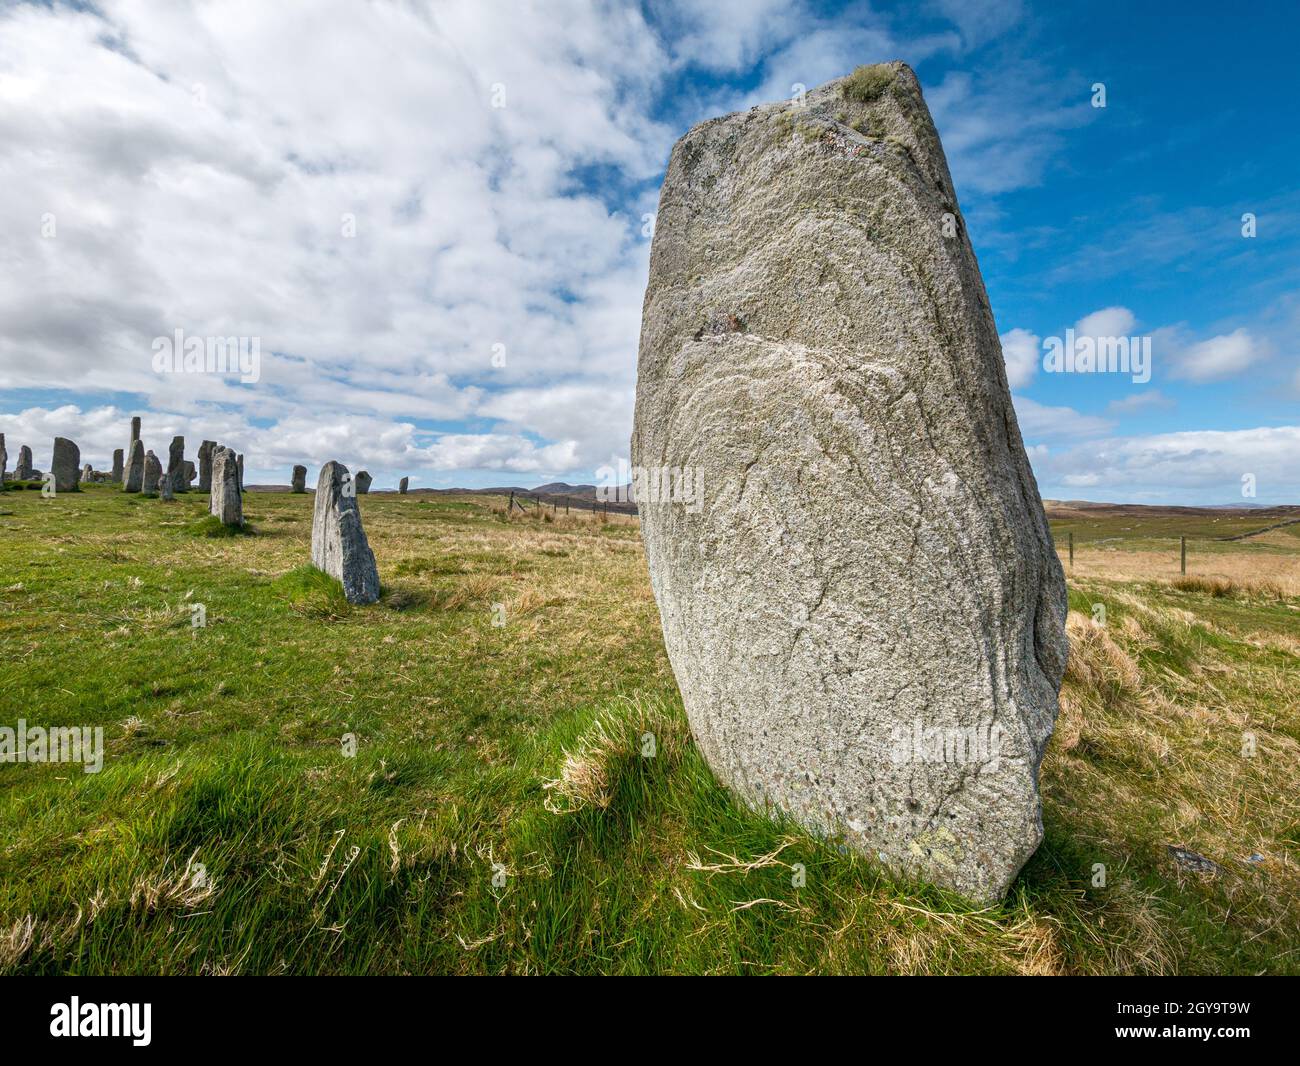 Calanais pietre in piedi monumento neolitico, Callanish, Isola di Lewis, Scozia, Regno Unito Foto Stock